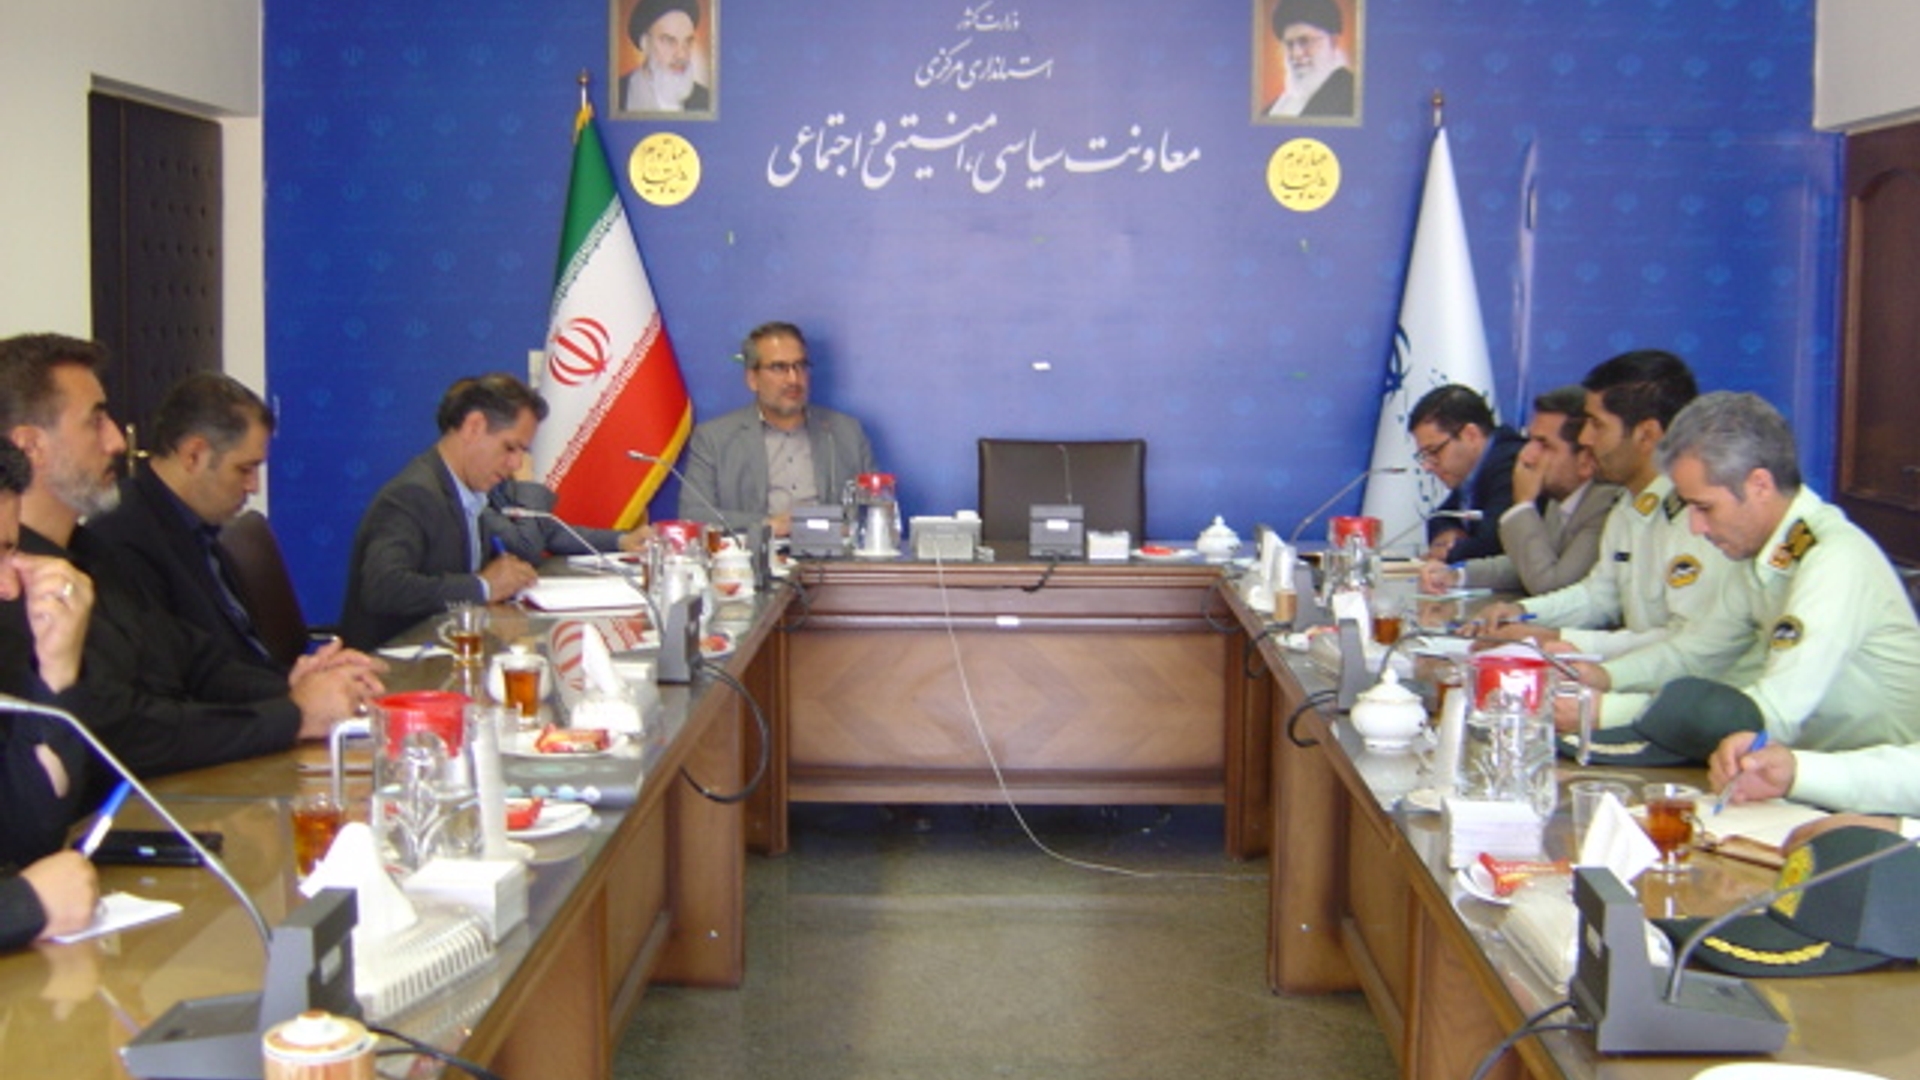 جلسه کمیسیون پیشگیری و مقابله با سرقت استان ساعت 8 صبح روز شنبه مورخ 28-5-1402 به ریاست آقای رحیمی تبار مدیر کل امنیتی و انتظامی برگزار گردید.